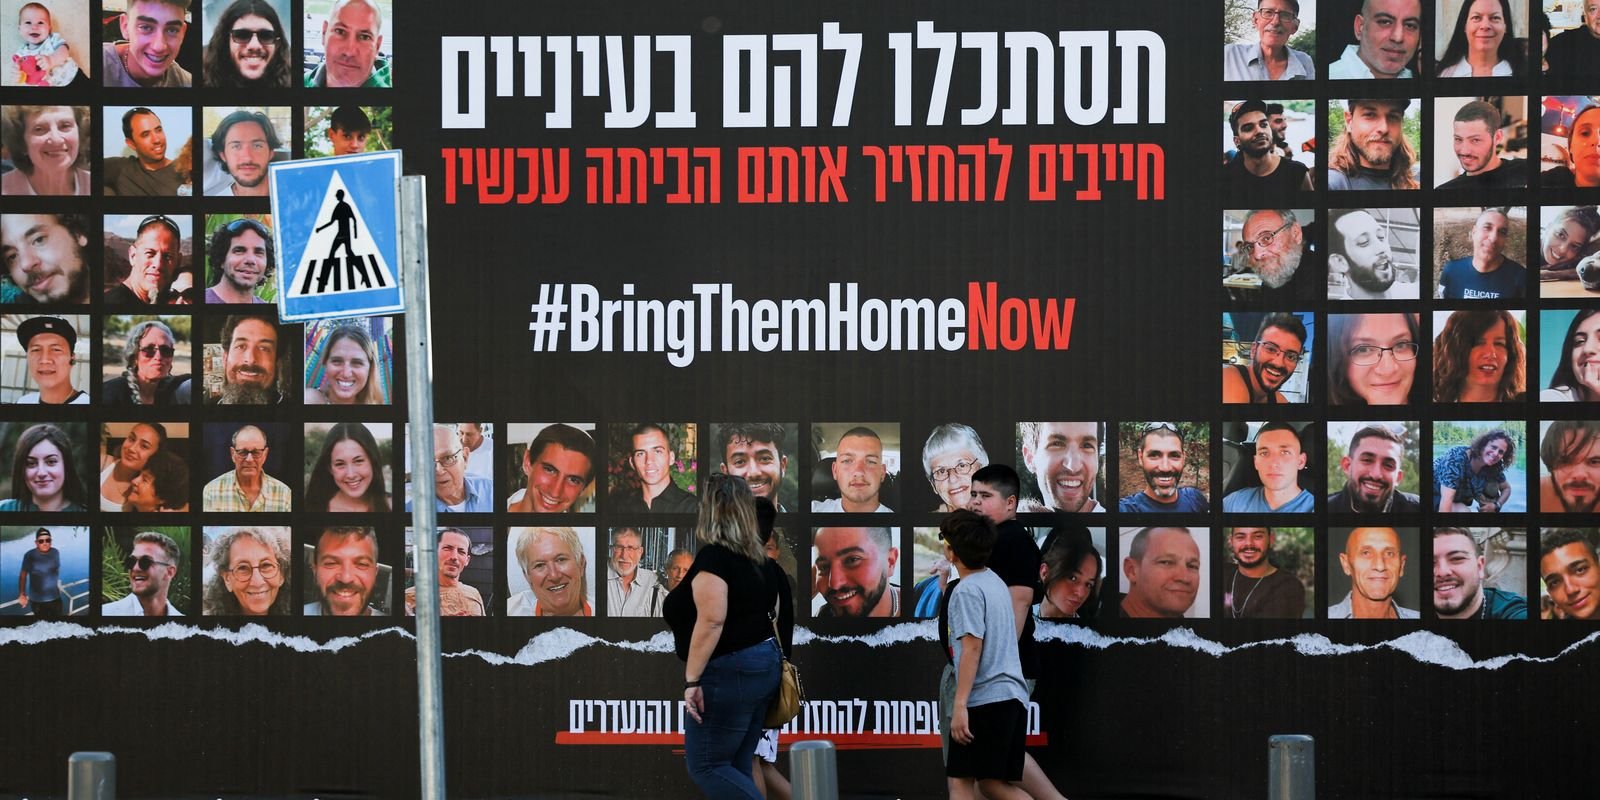 Israel promete retomar bombardeio se grupo de reféns não for libertado